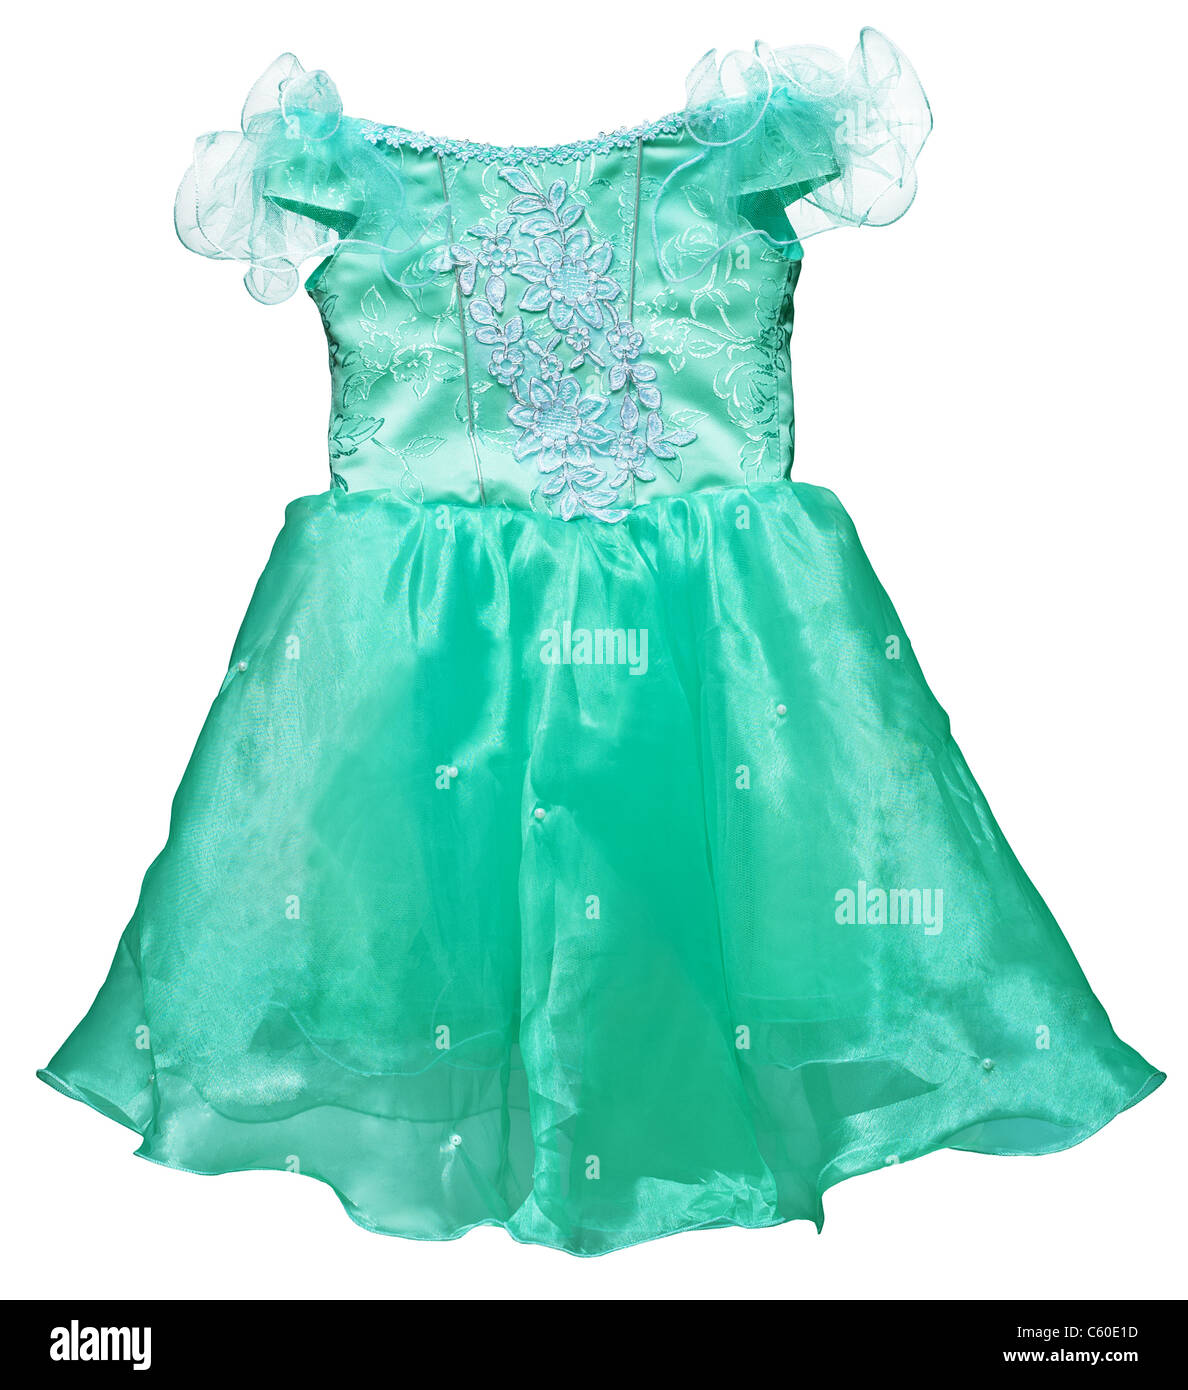 Une simple robe verte pour petite fille isolée sur fond blanc Banque D'Images